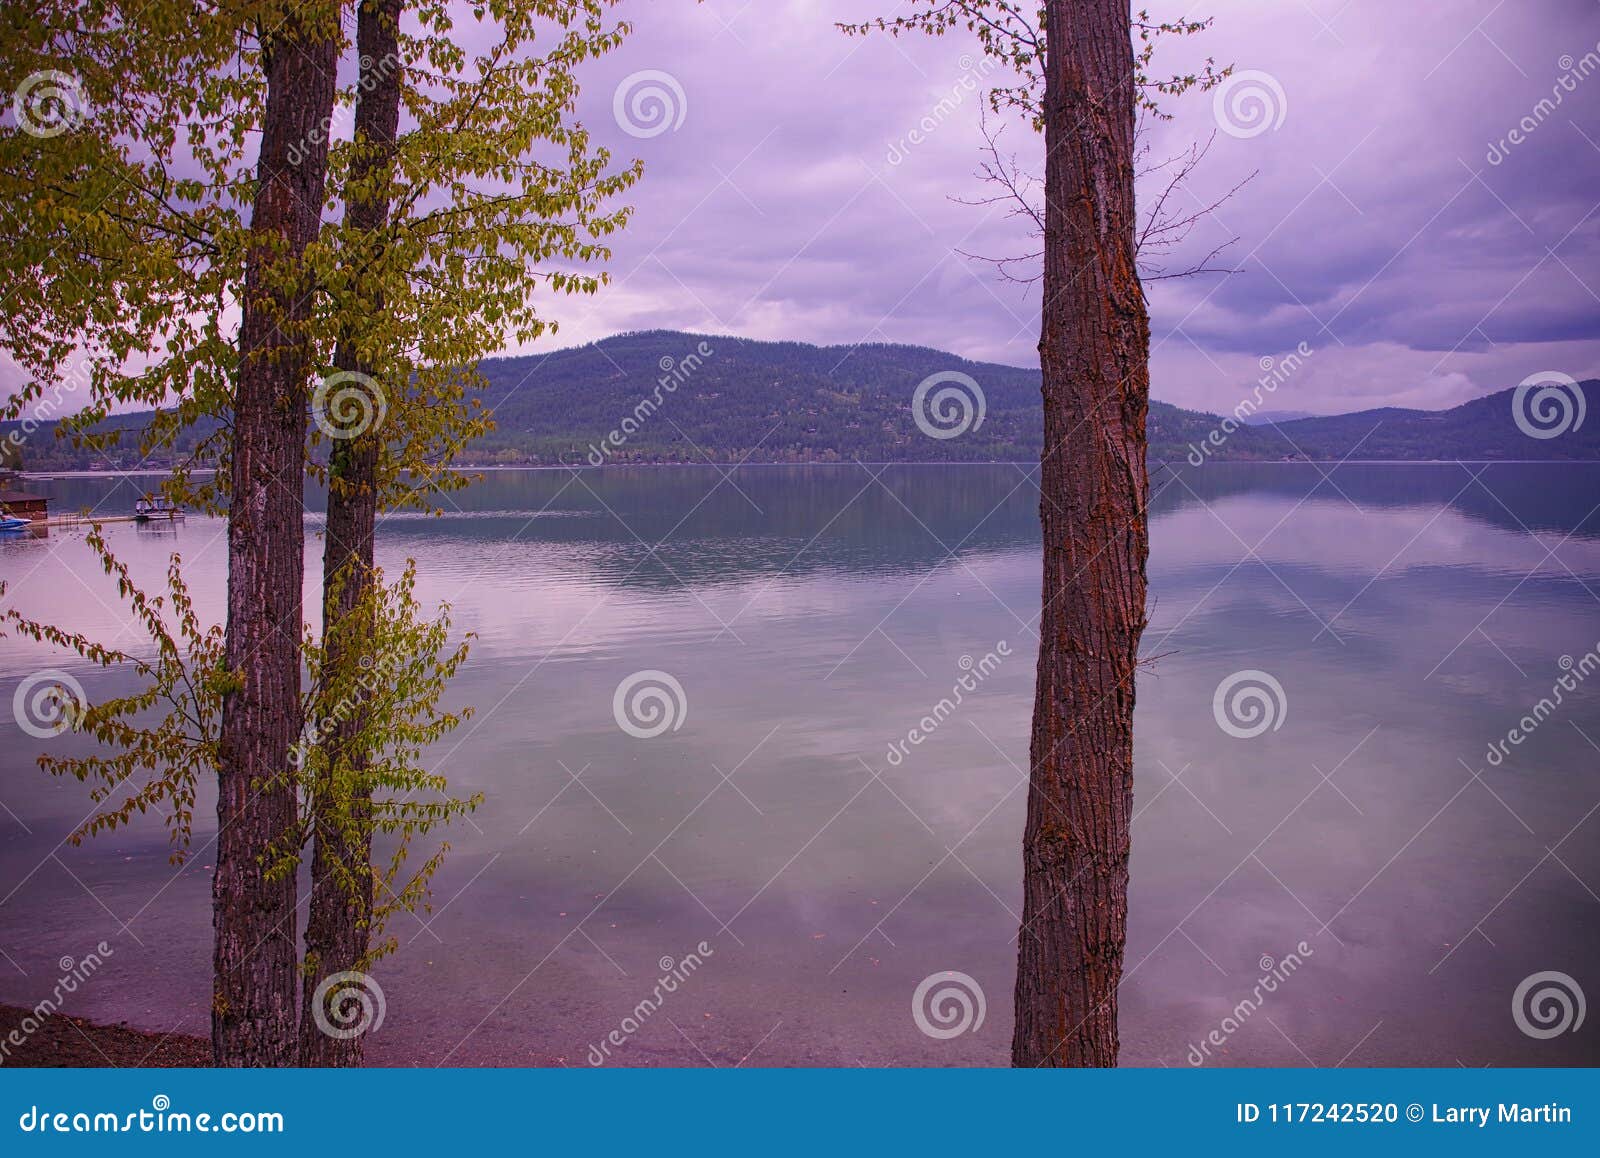 whitefish lake, montana